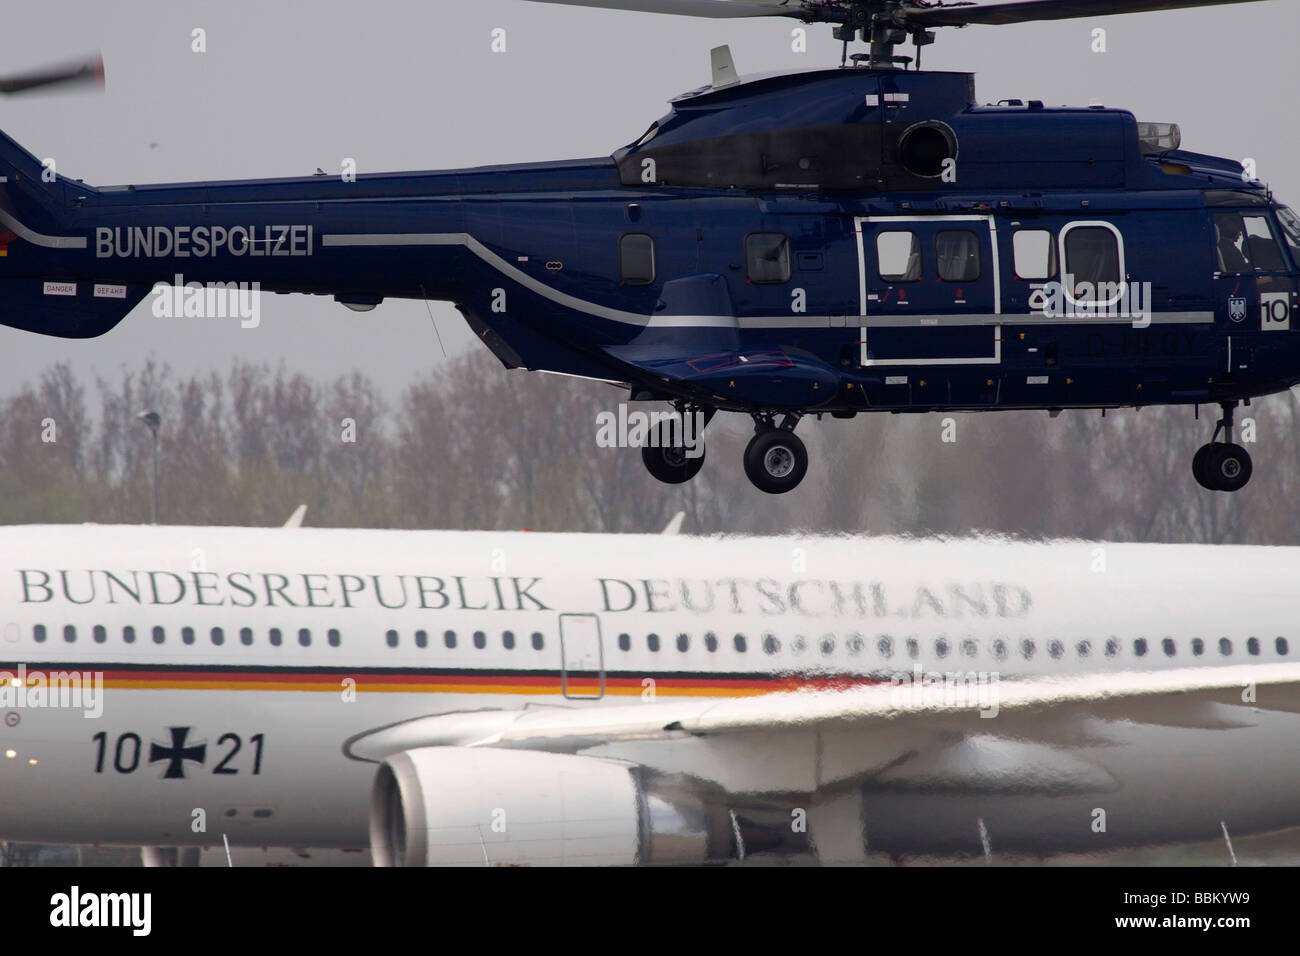 Super Puma elicottero della polizia federale, 60 anni, nato l'arrivo delle delegazioni presso l'aeroporto Karlsruhe / Baden-Bad Foto Stock